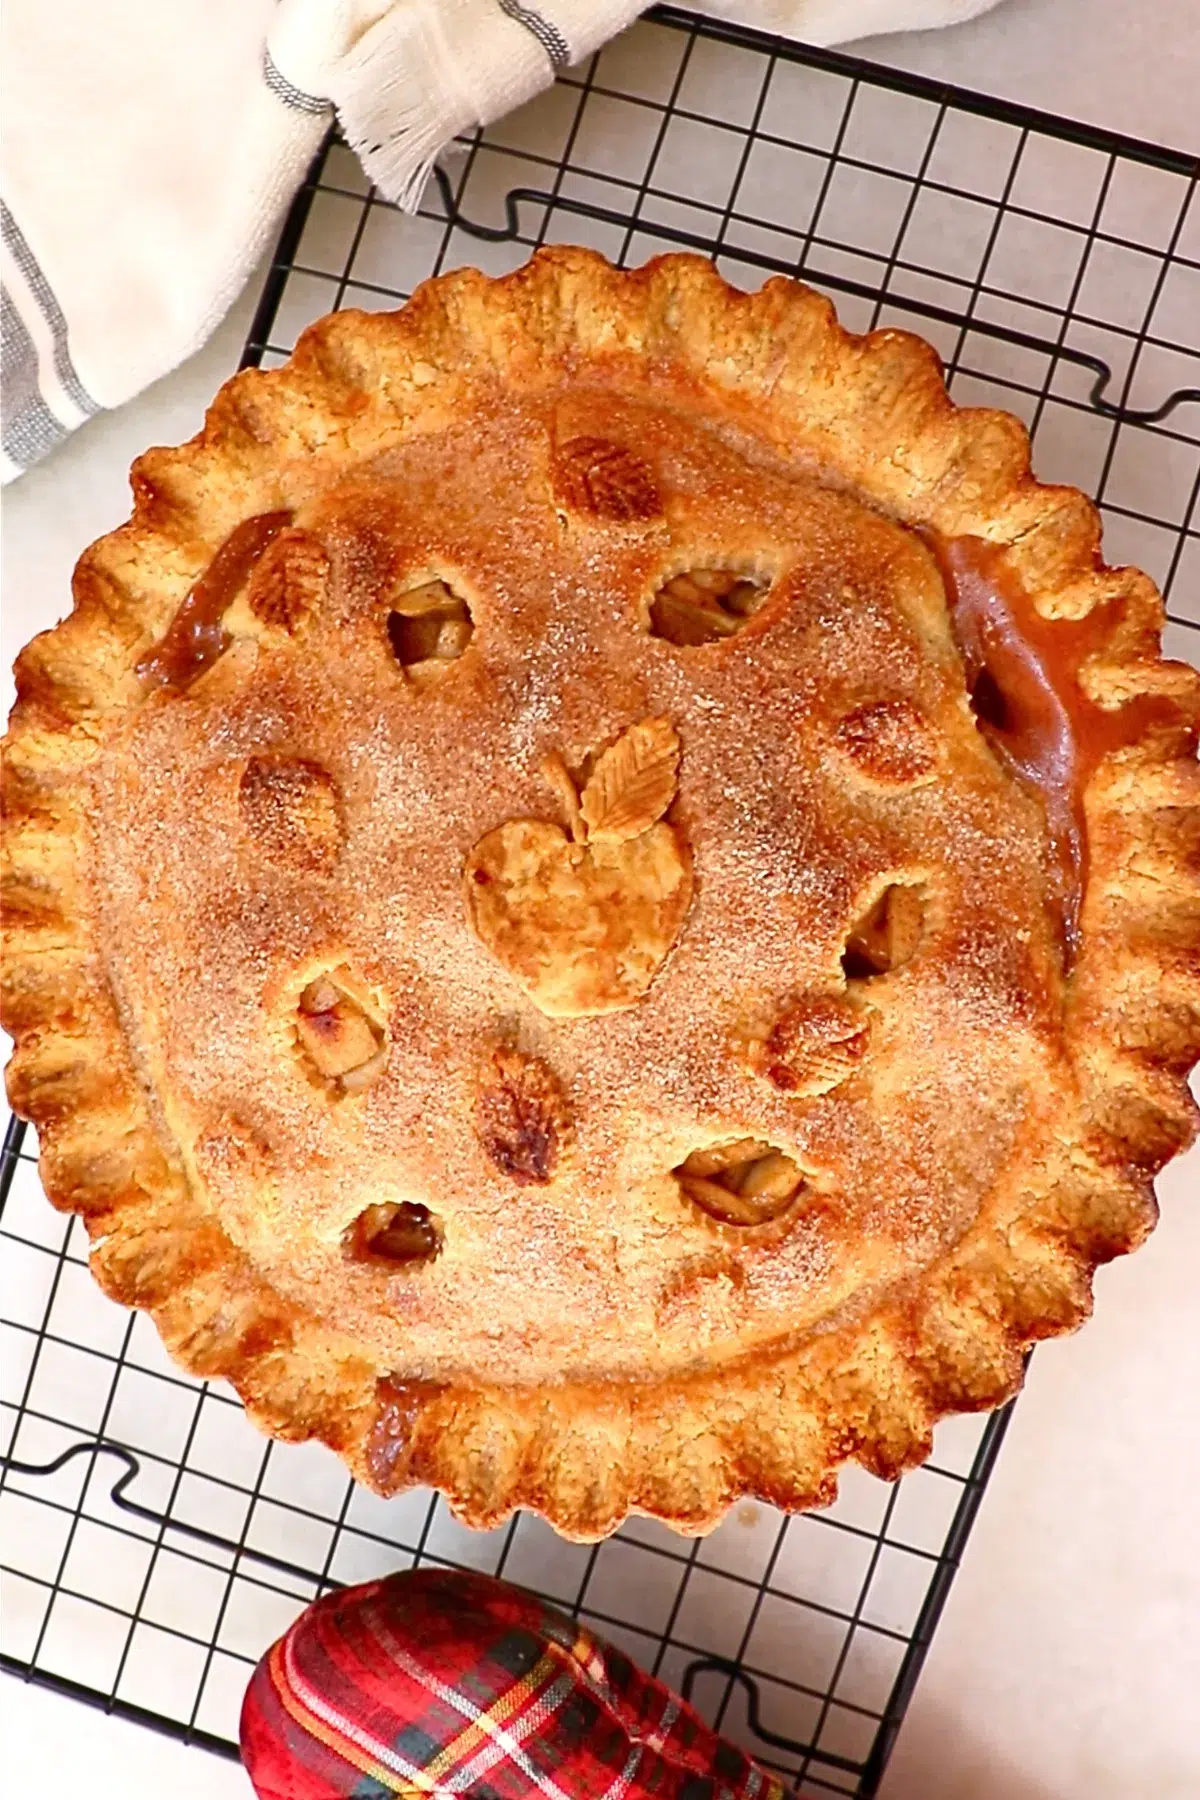 freshly baked homemade apple pie